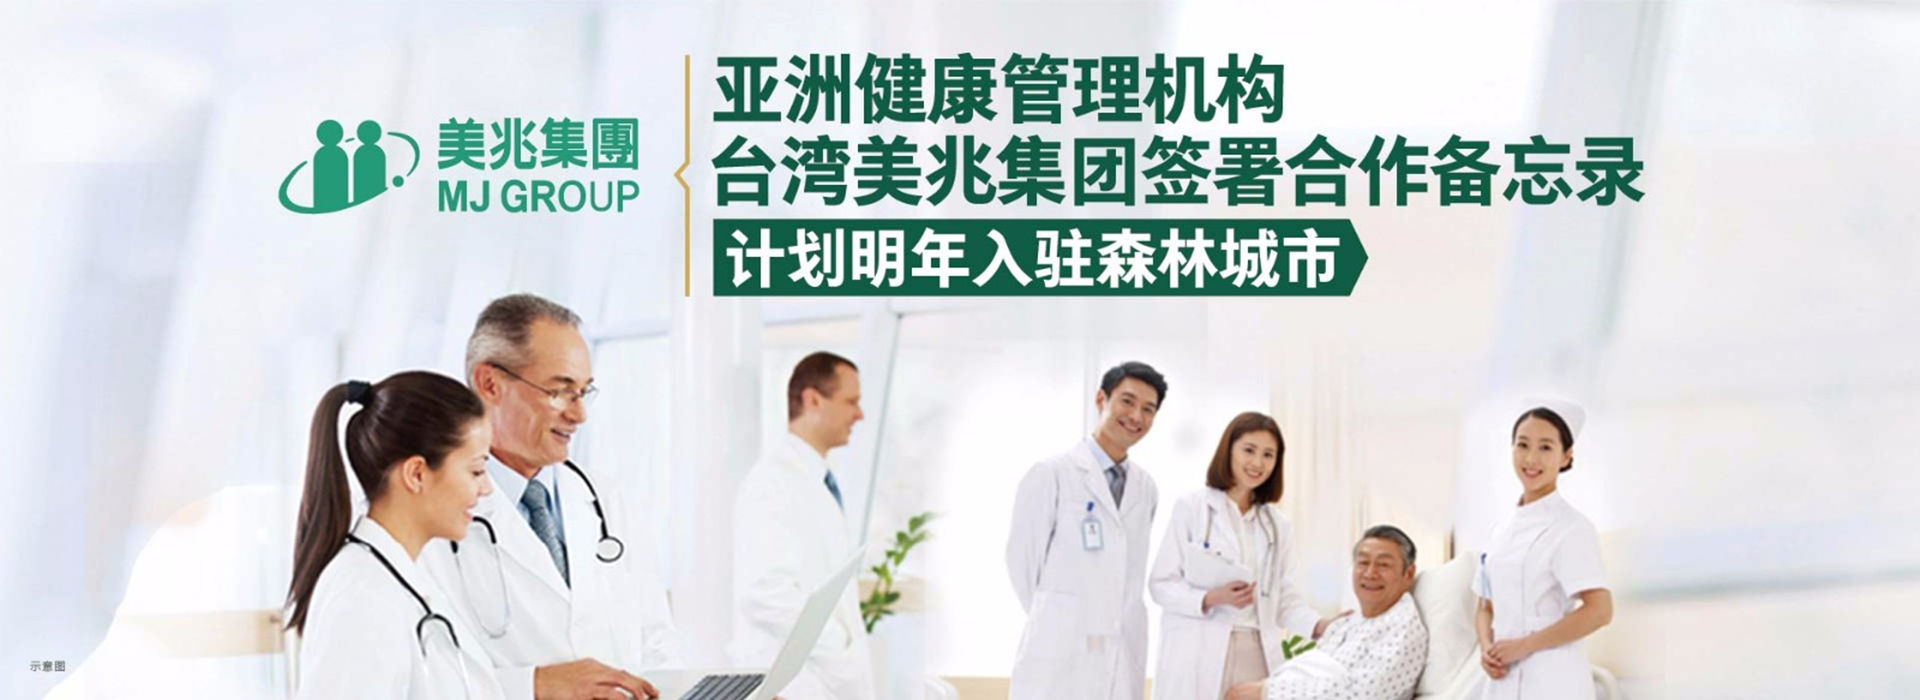 亚洲健康管理机构——台湾美兆集团计划入驻澳门威泥斯人0609